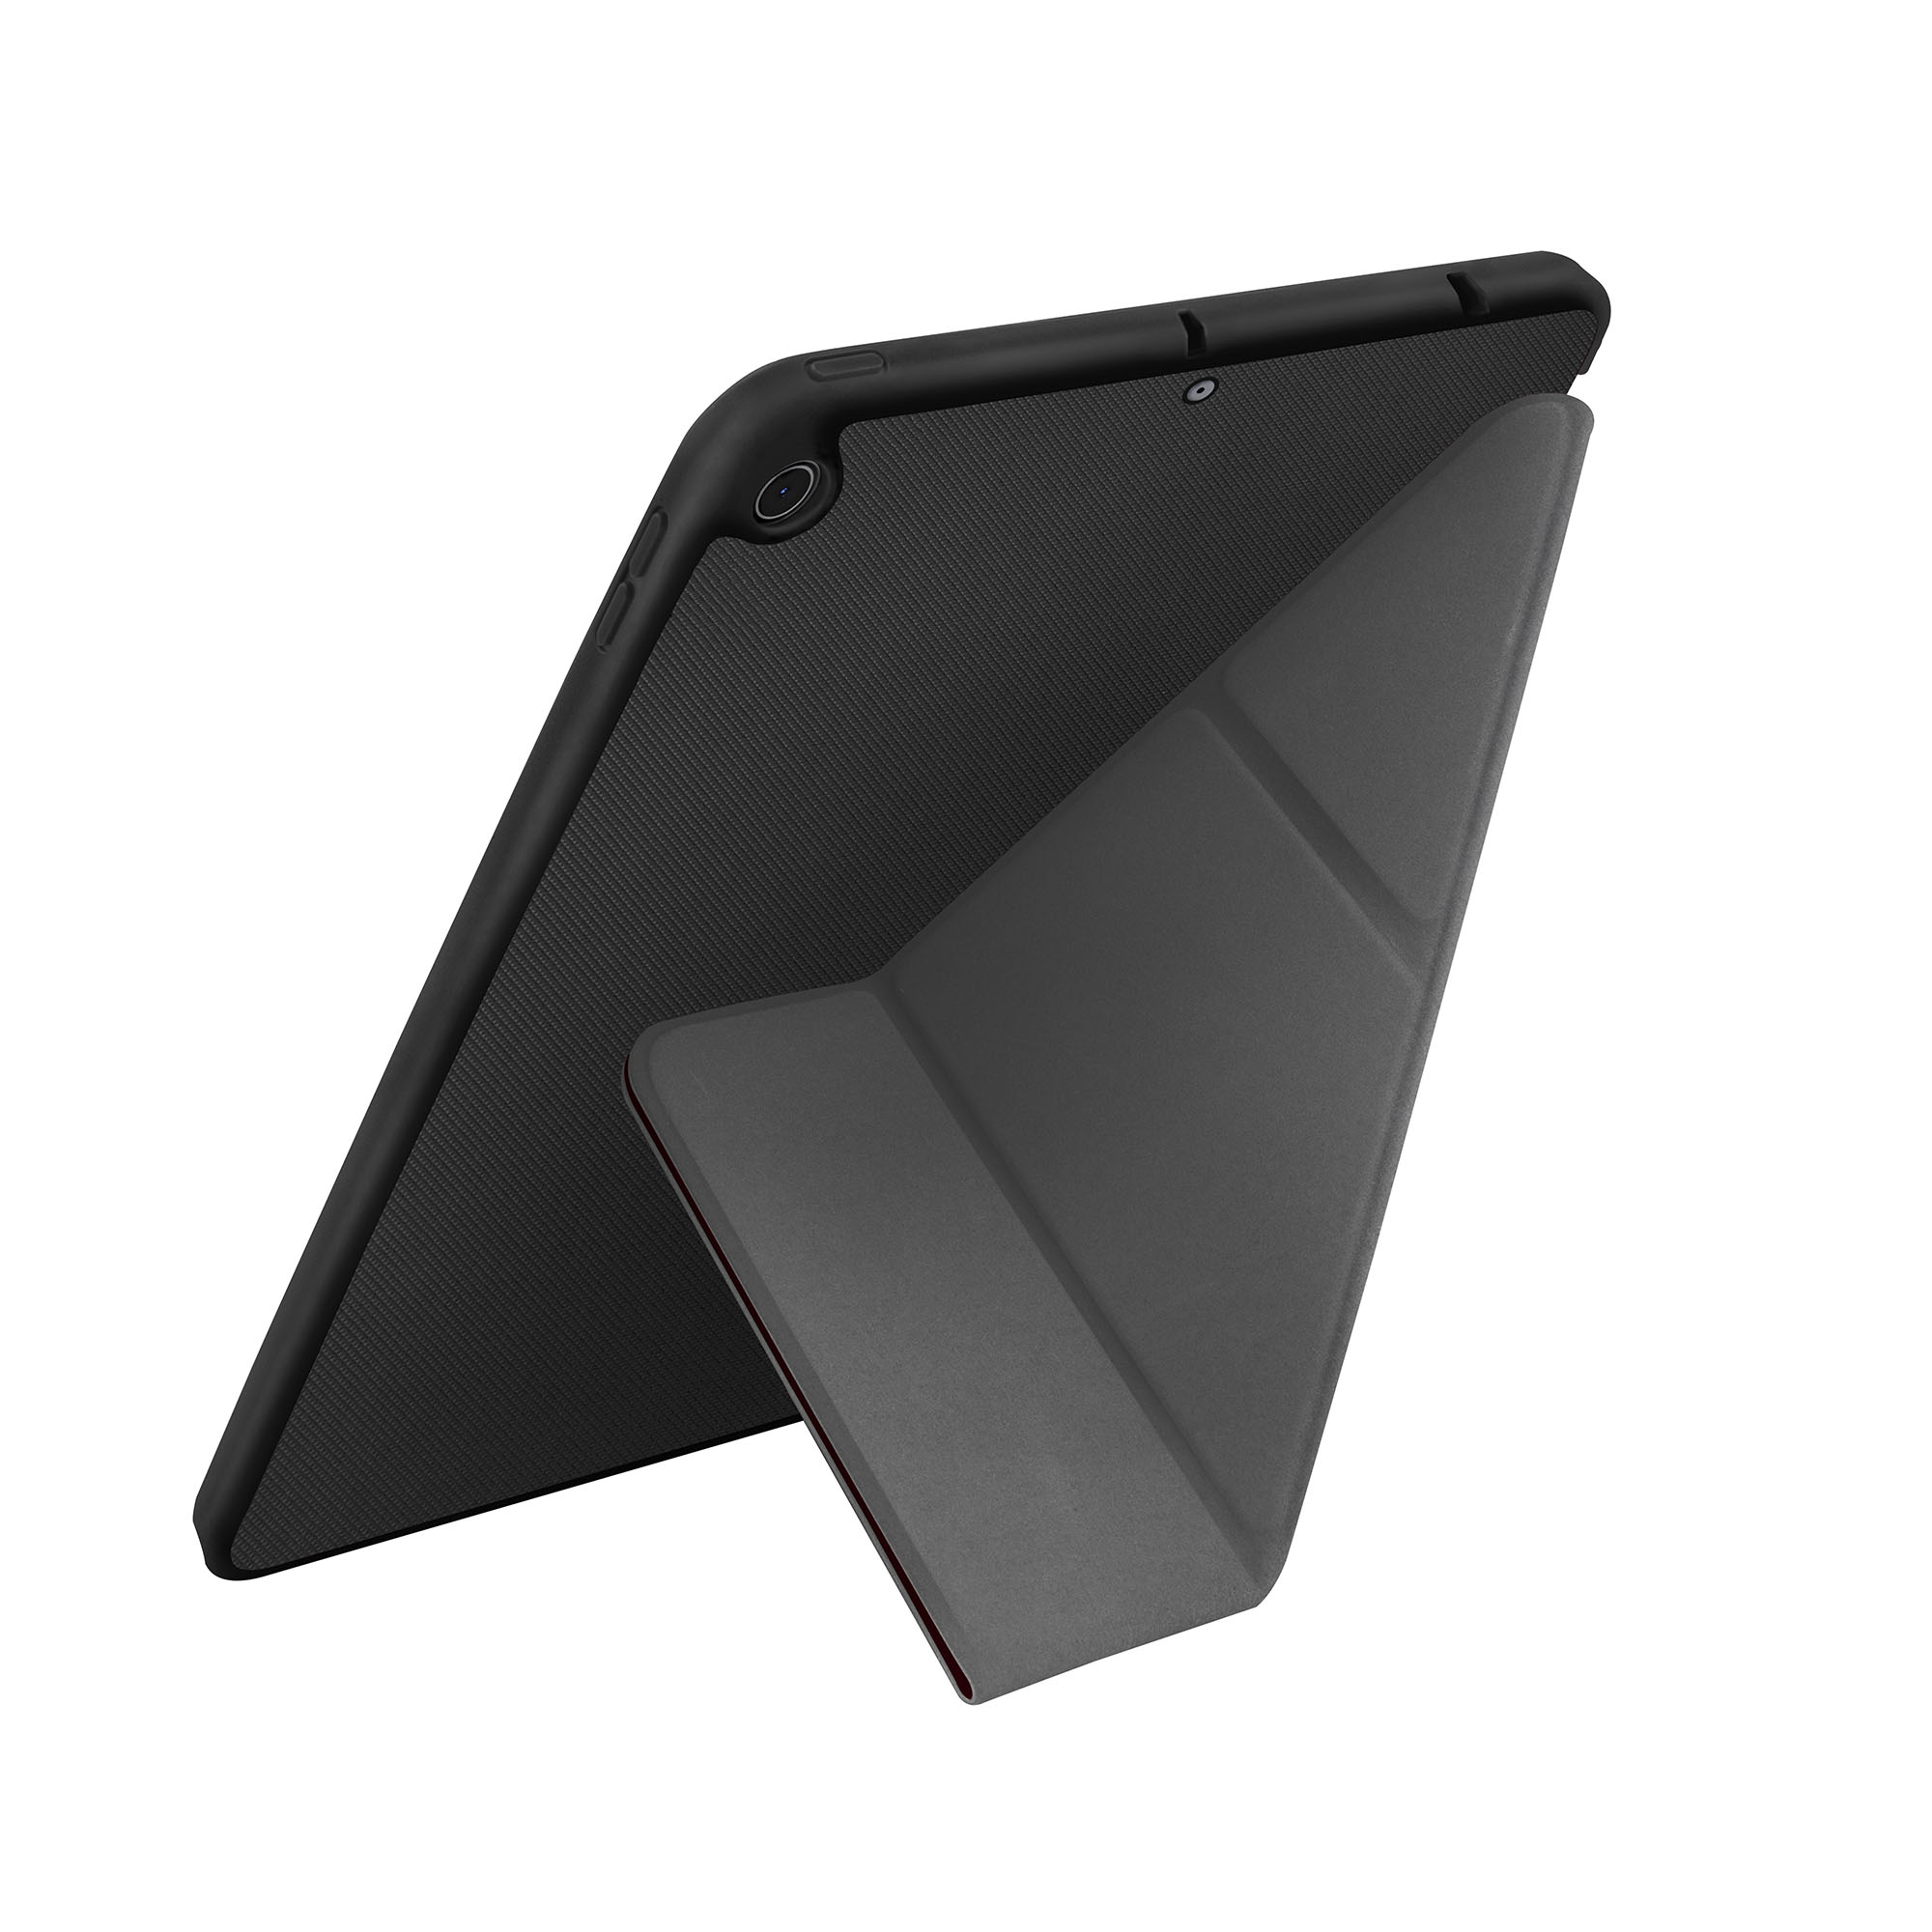 iPad Mini (2019), hoesje transforma rigor, stand up ebony, zwart